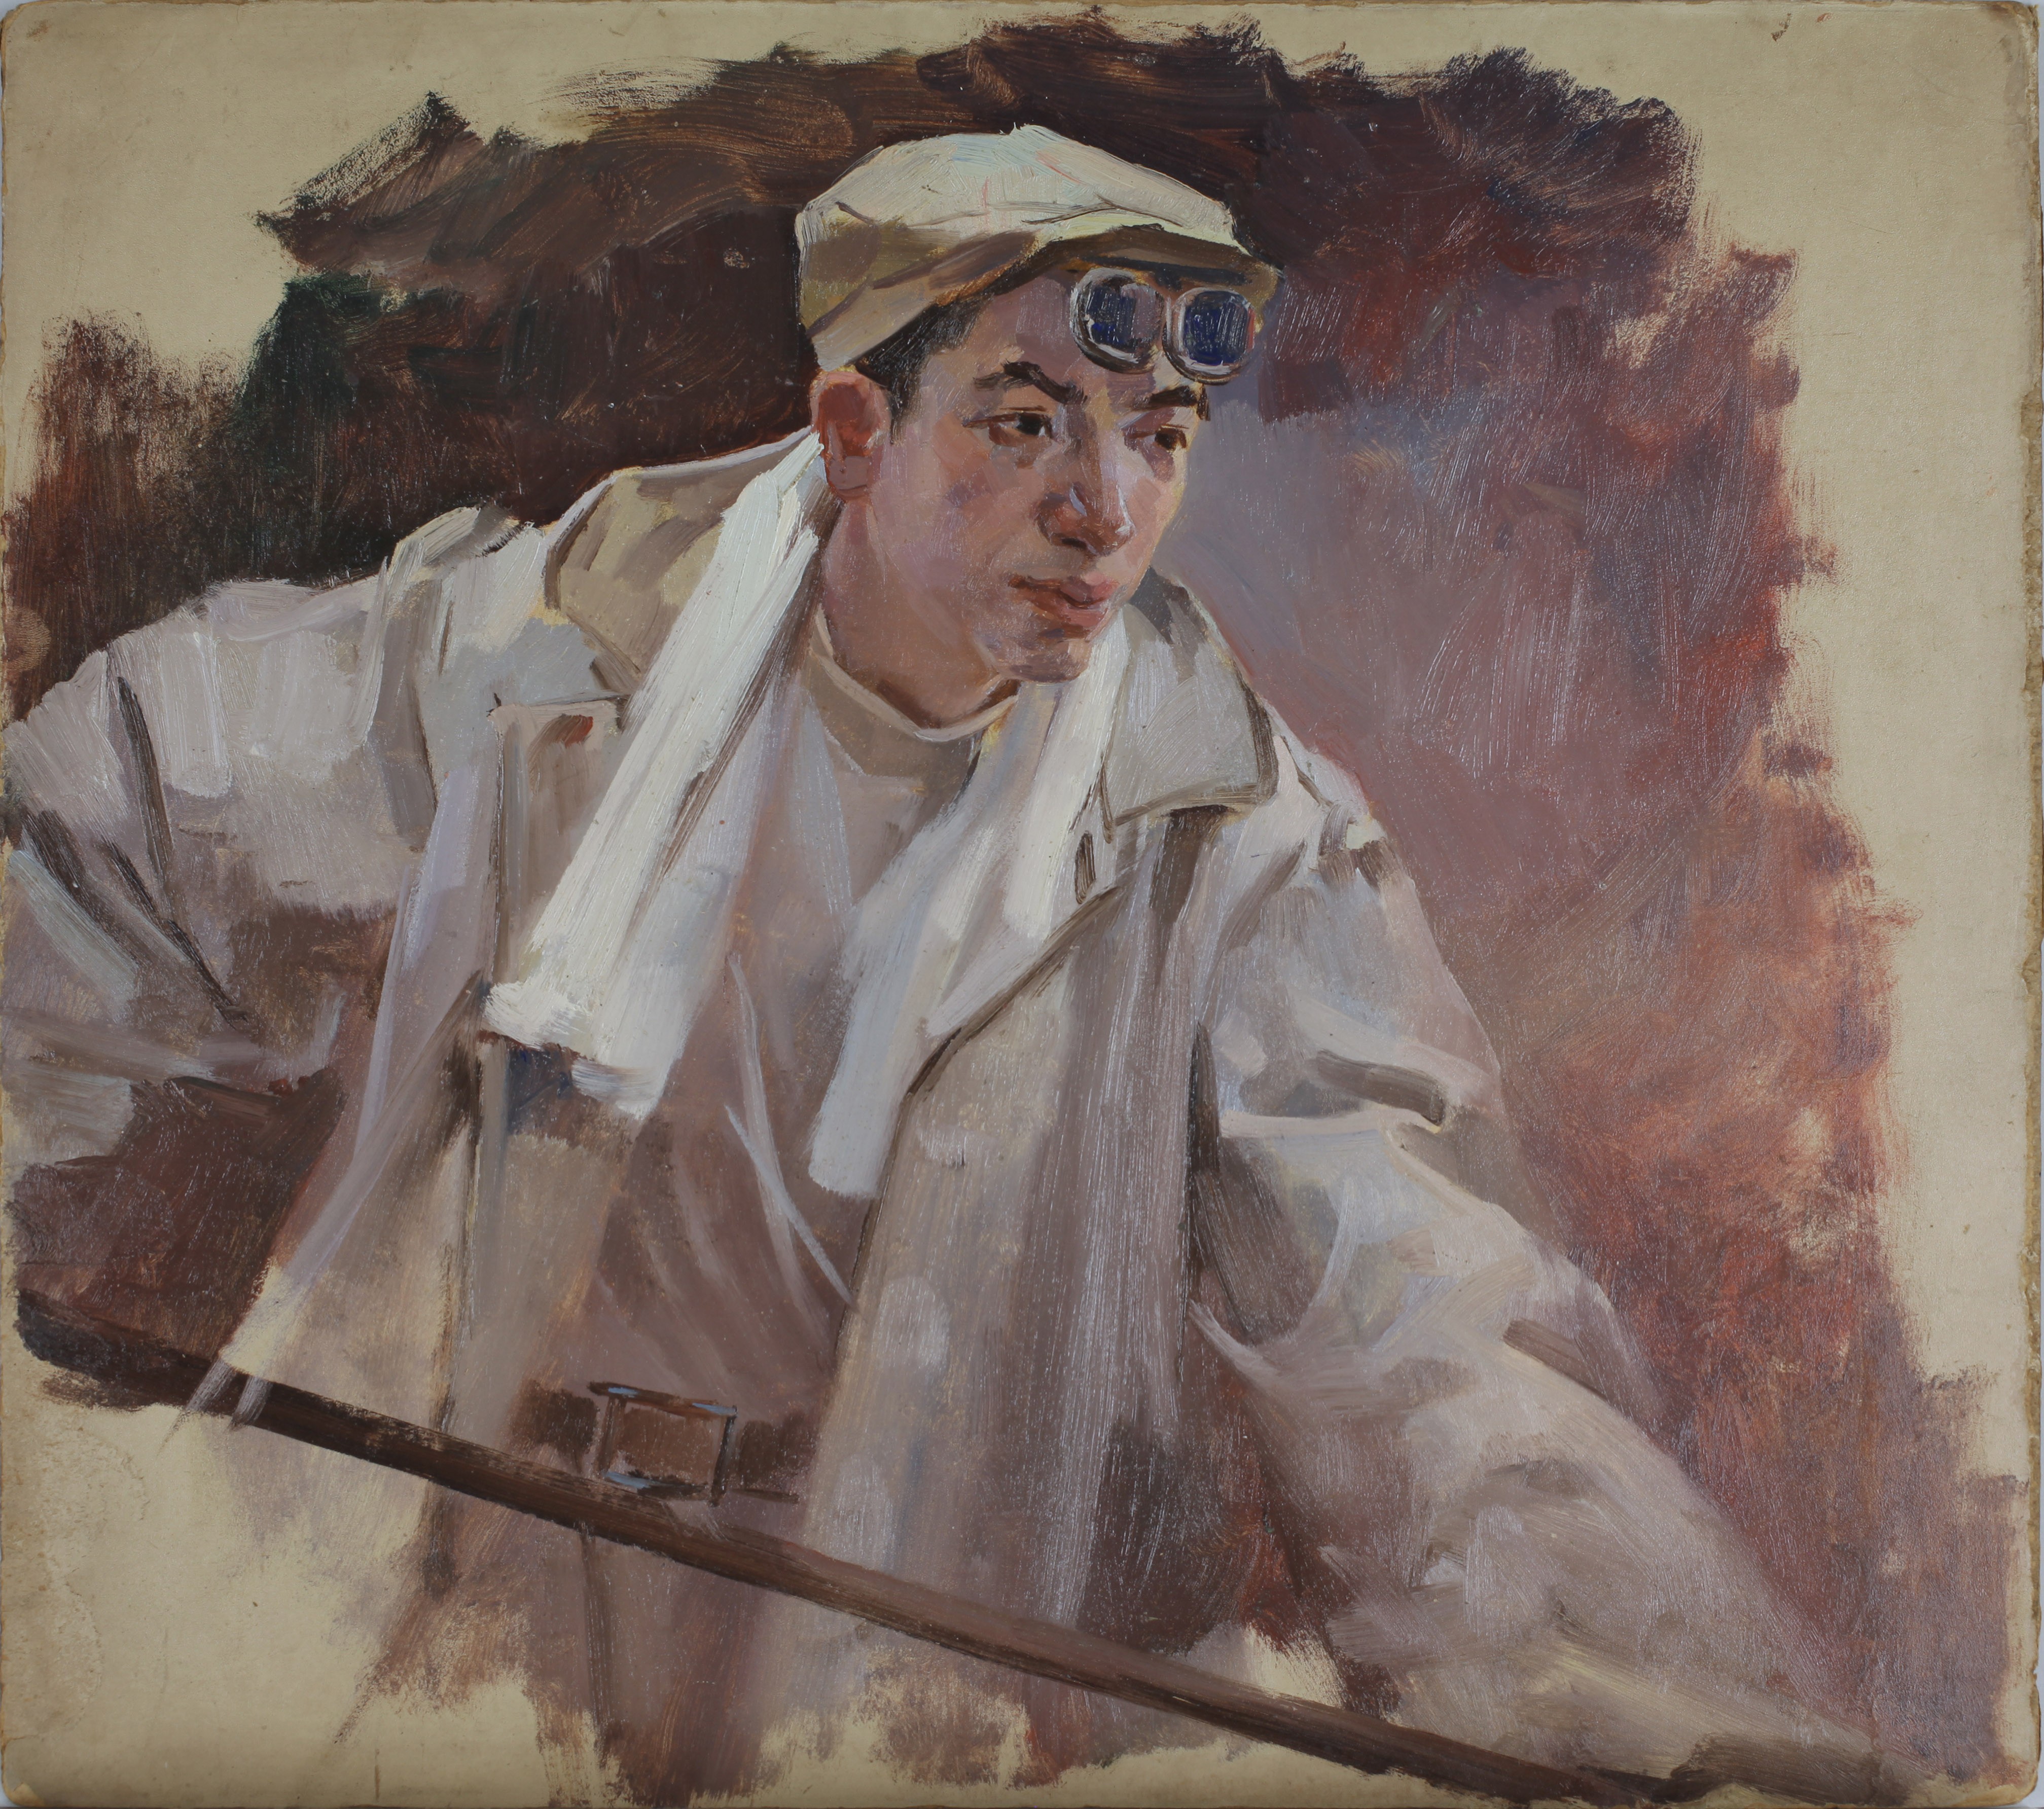 炼钢工人4 纸本油画 35cm×40cm  1957年  湖北美术馆藏农民肖像 纸本